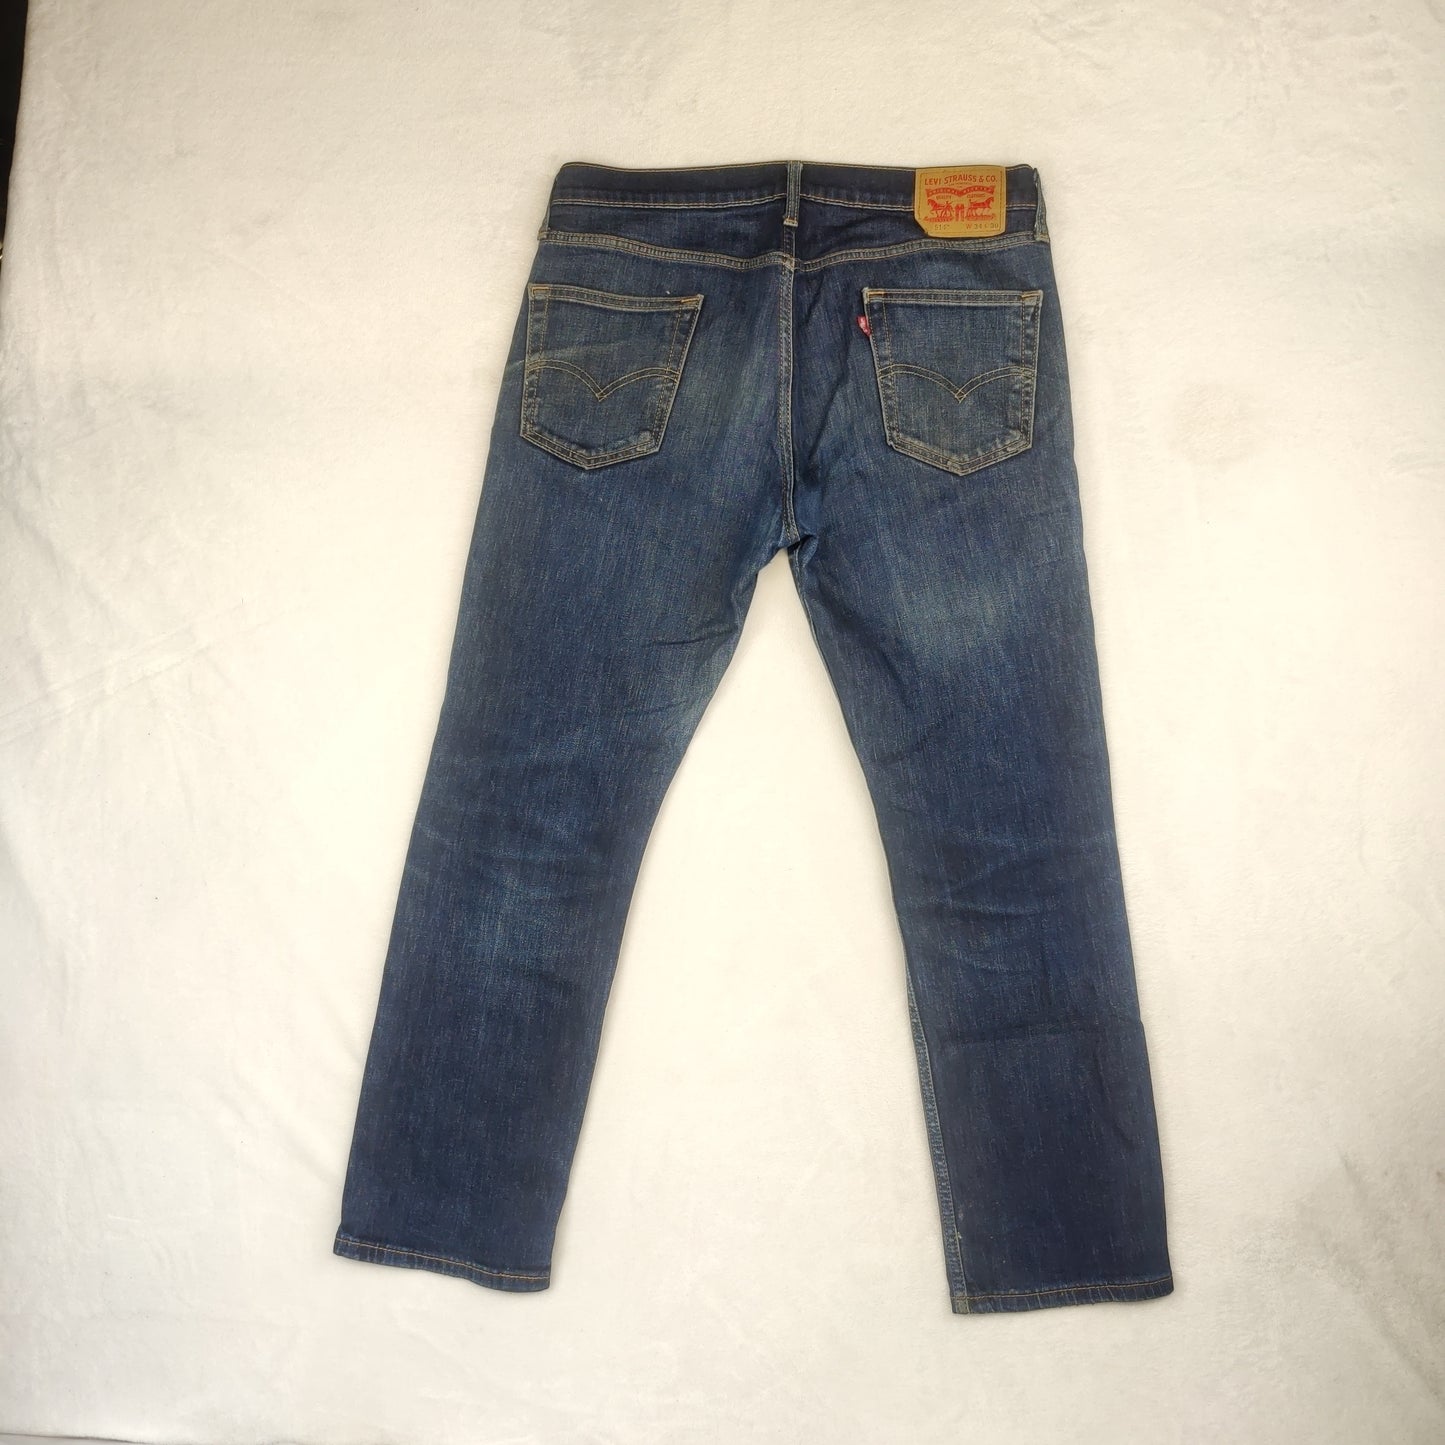 Levi's 514 Regular Straight Fit Blue Denim Cotton Jeans Men Size W34/L30